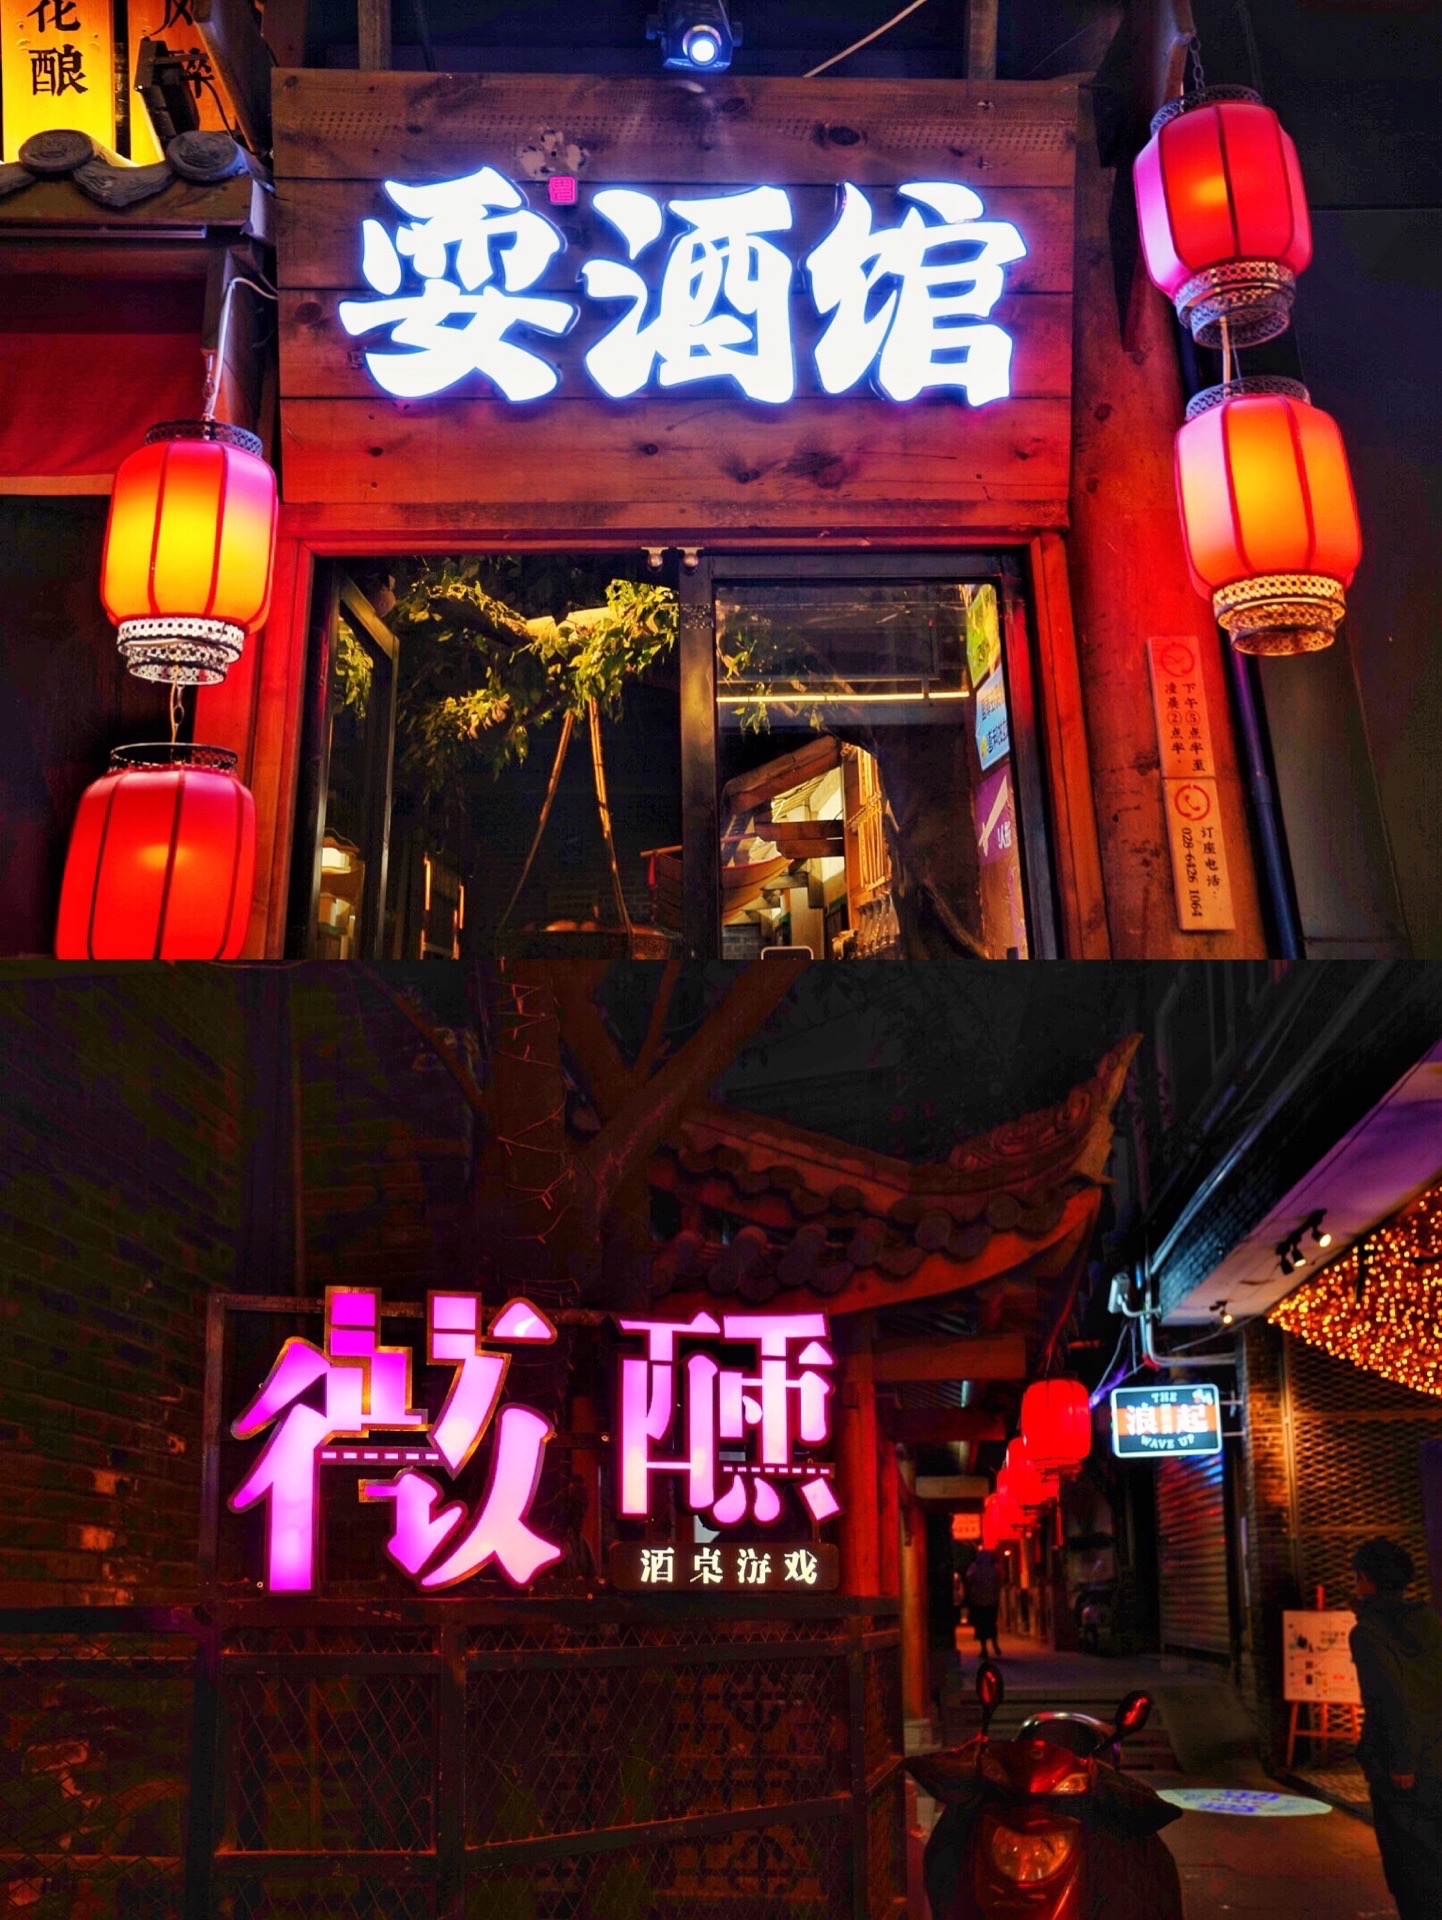 【携程美食林】成都香香巷餐馆,成都市中心港风霓虹灯